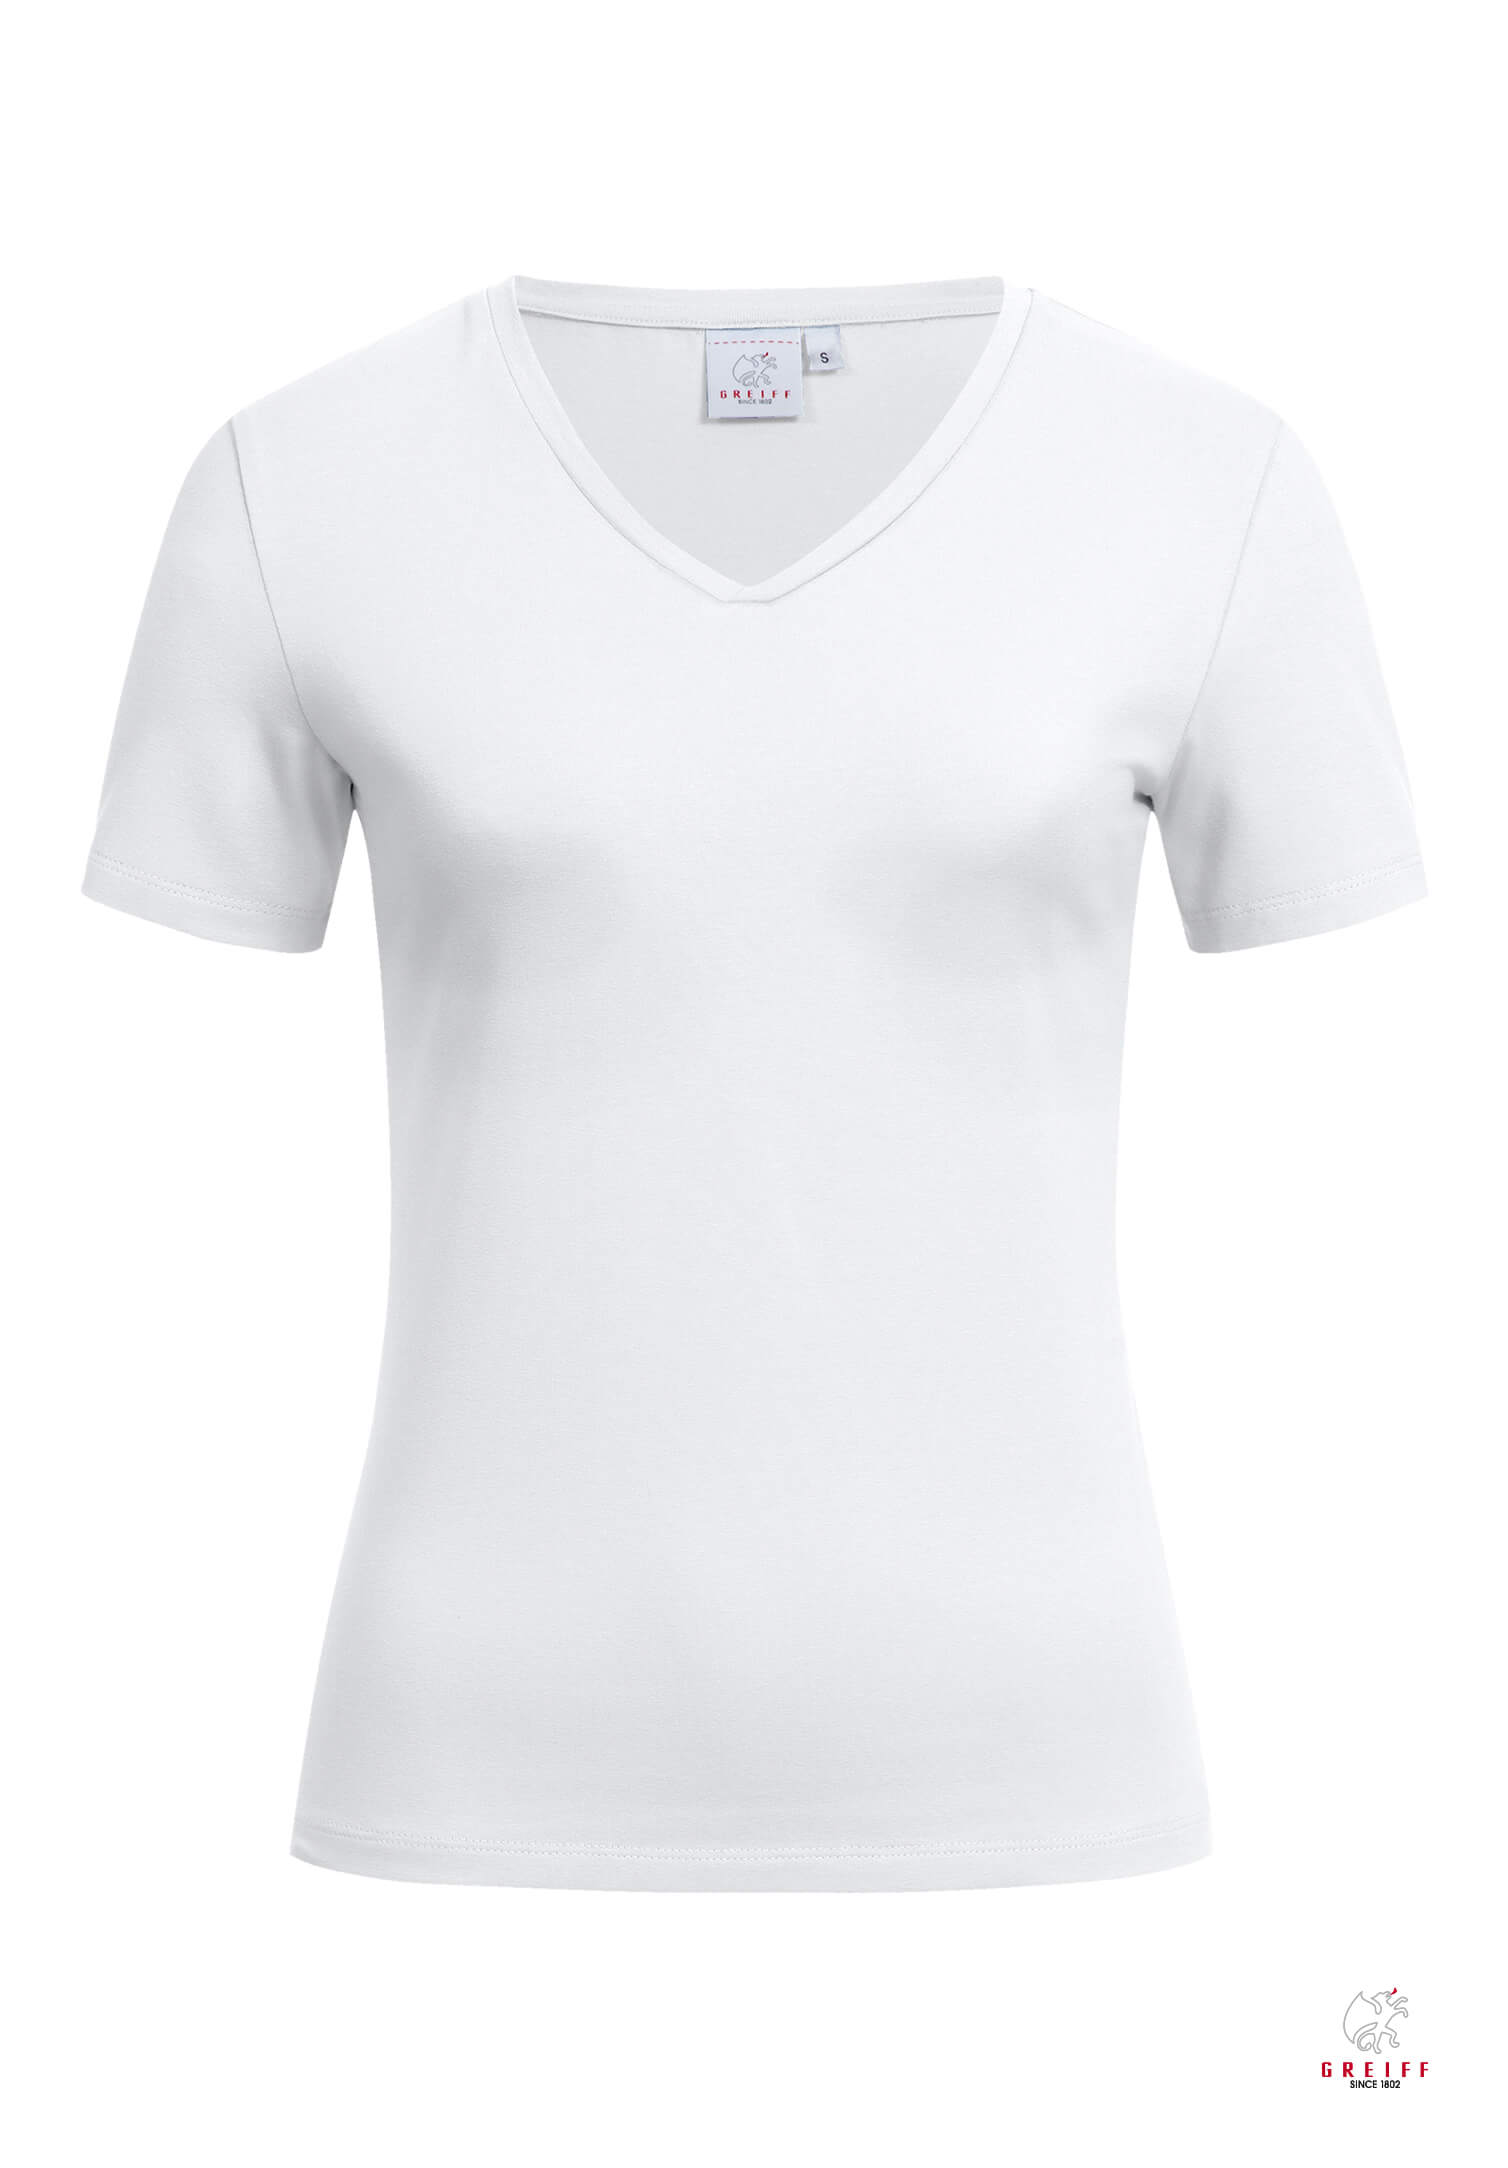 Damen Shirt Kurzarm - weiß - S